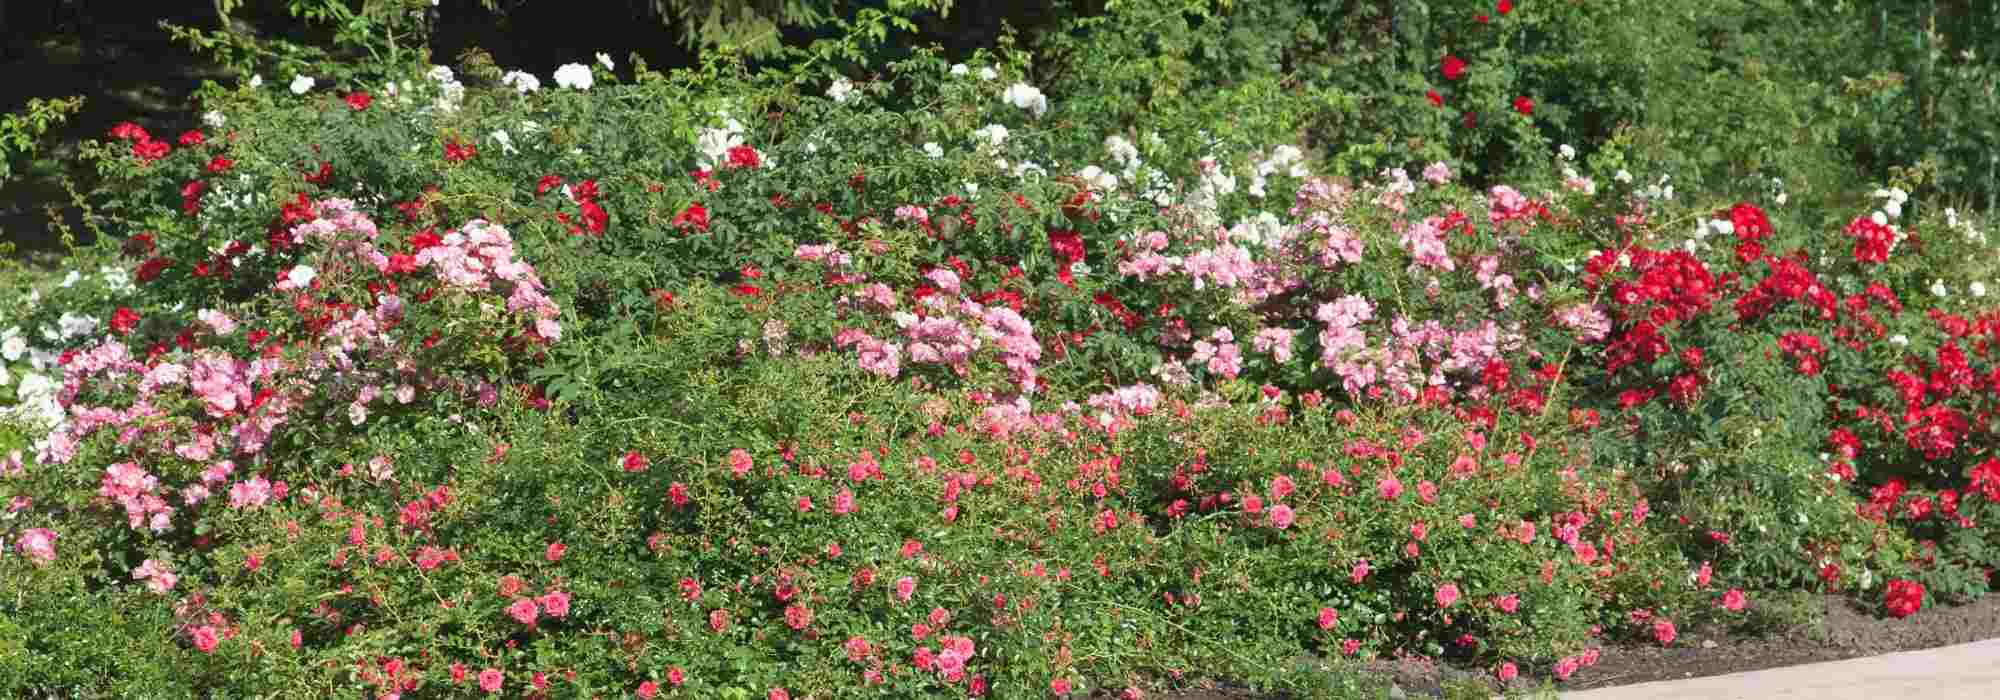 comment creer une roseraie ou un jardin de roses